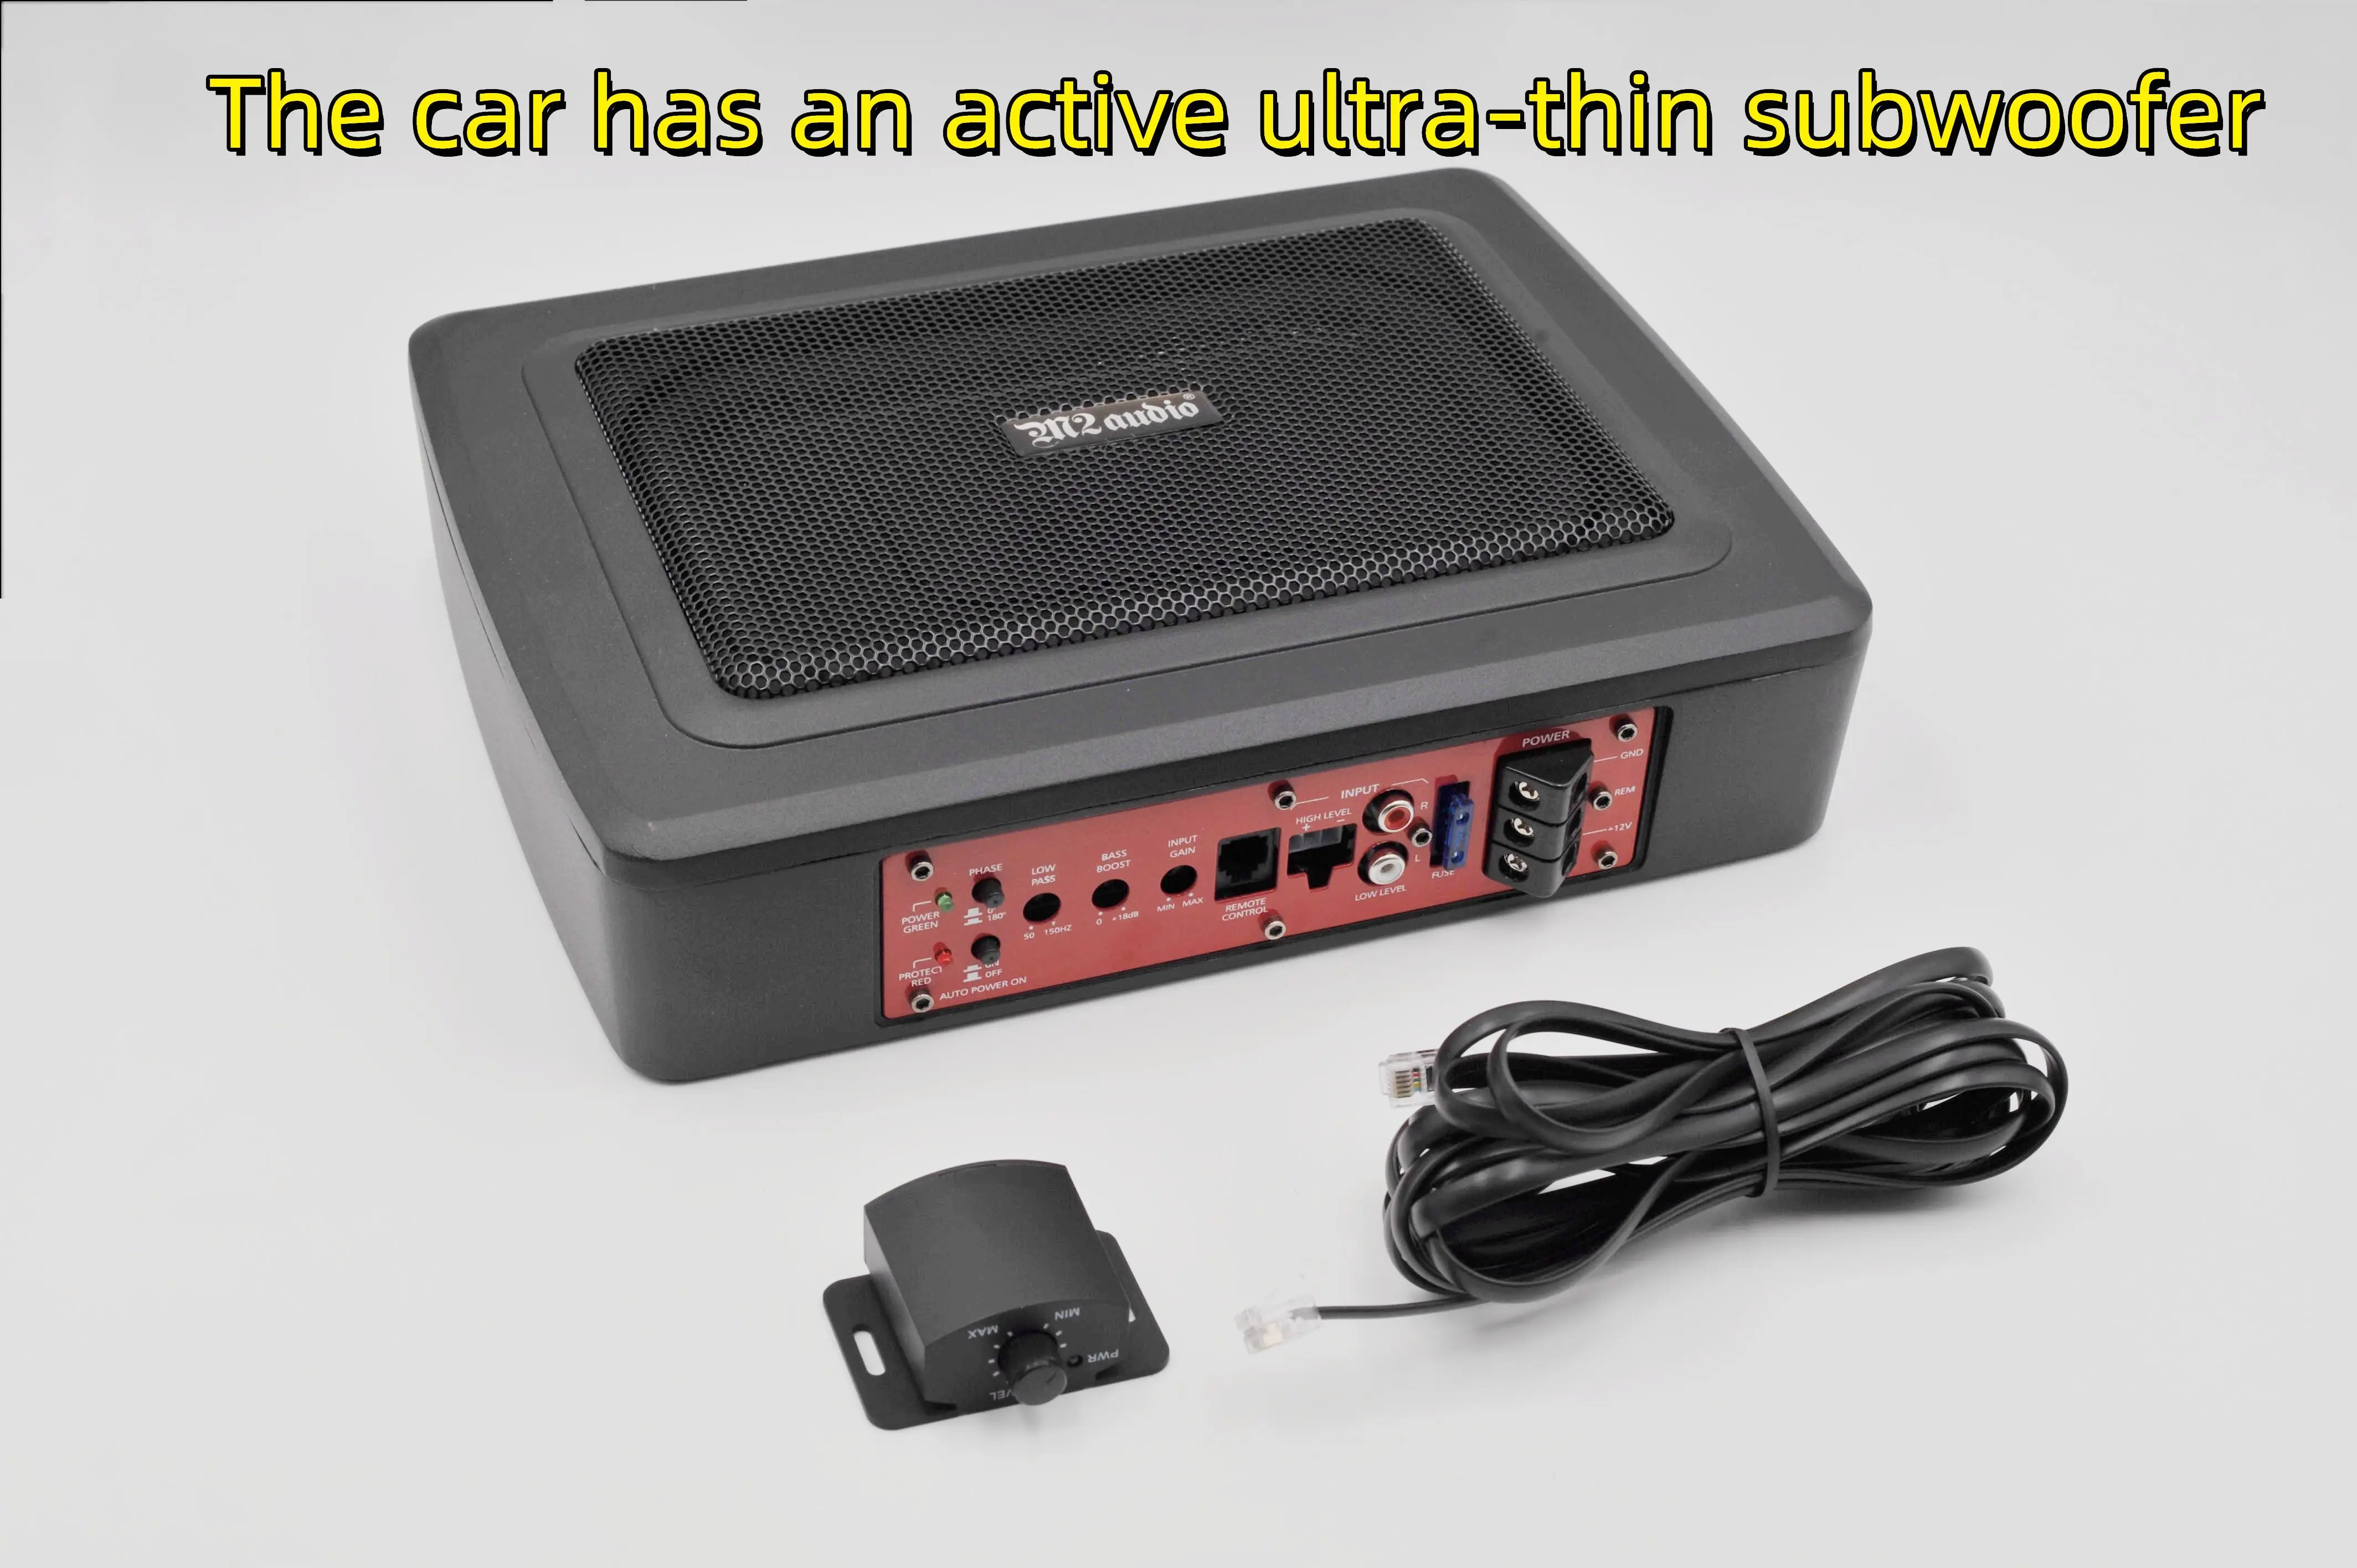 

Автомобильные аудиоколонки M2, автомобильное аудио нижнее сиденье, сабвуфер, автомобильный активный усилитель, Sub Woofe под сиденьем для автомобиля